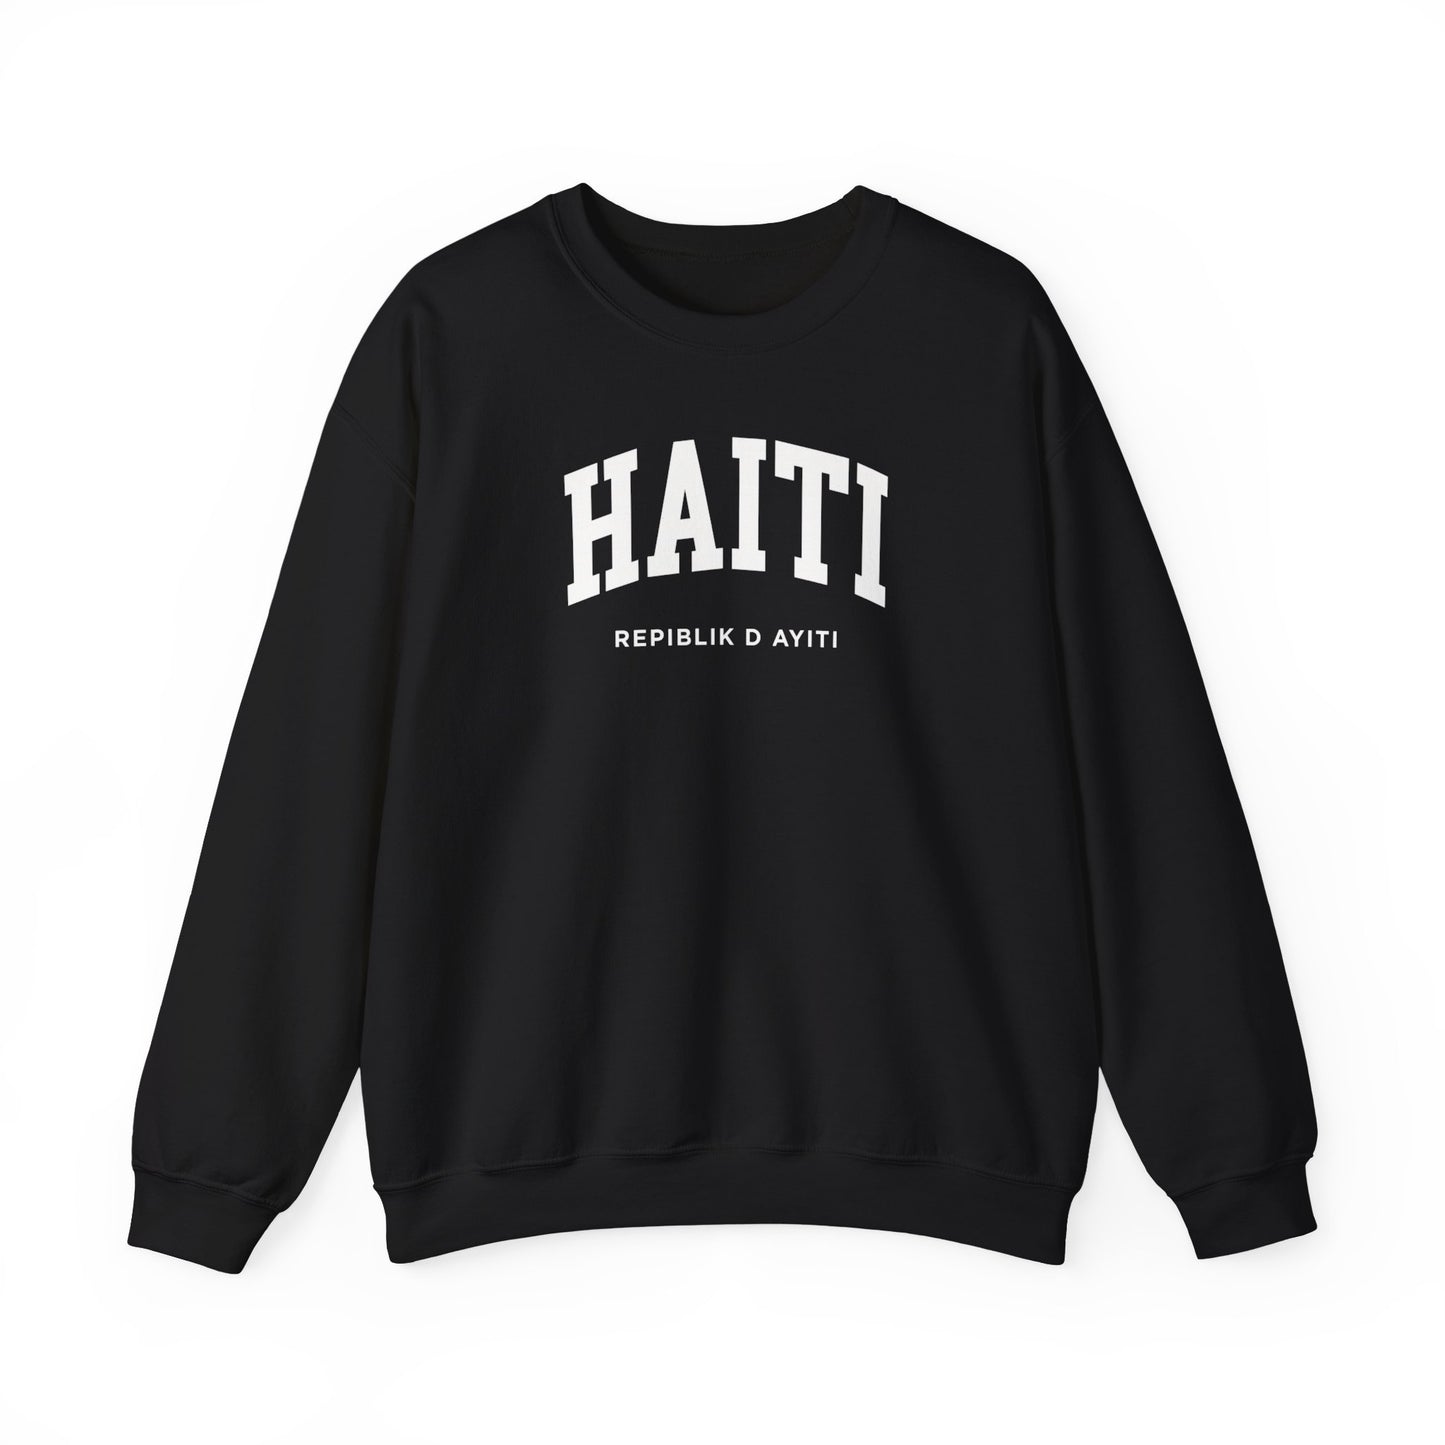 Haiti Sweatshirt